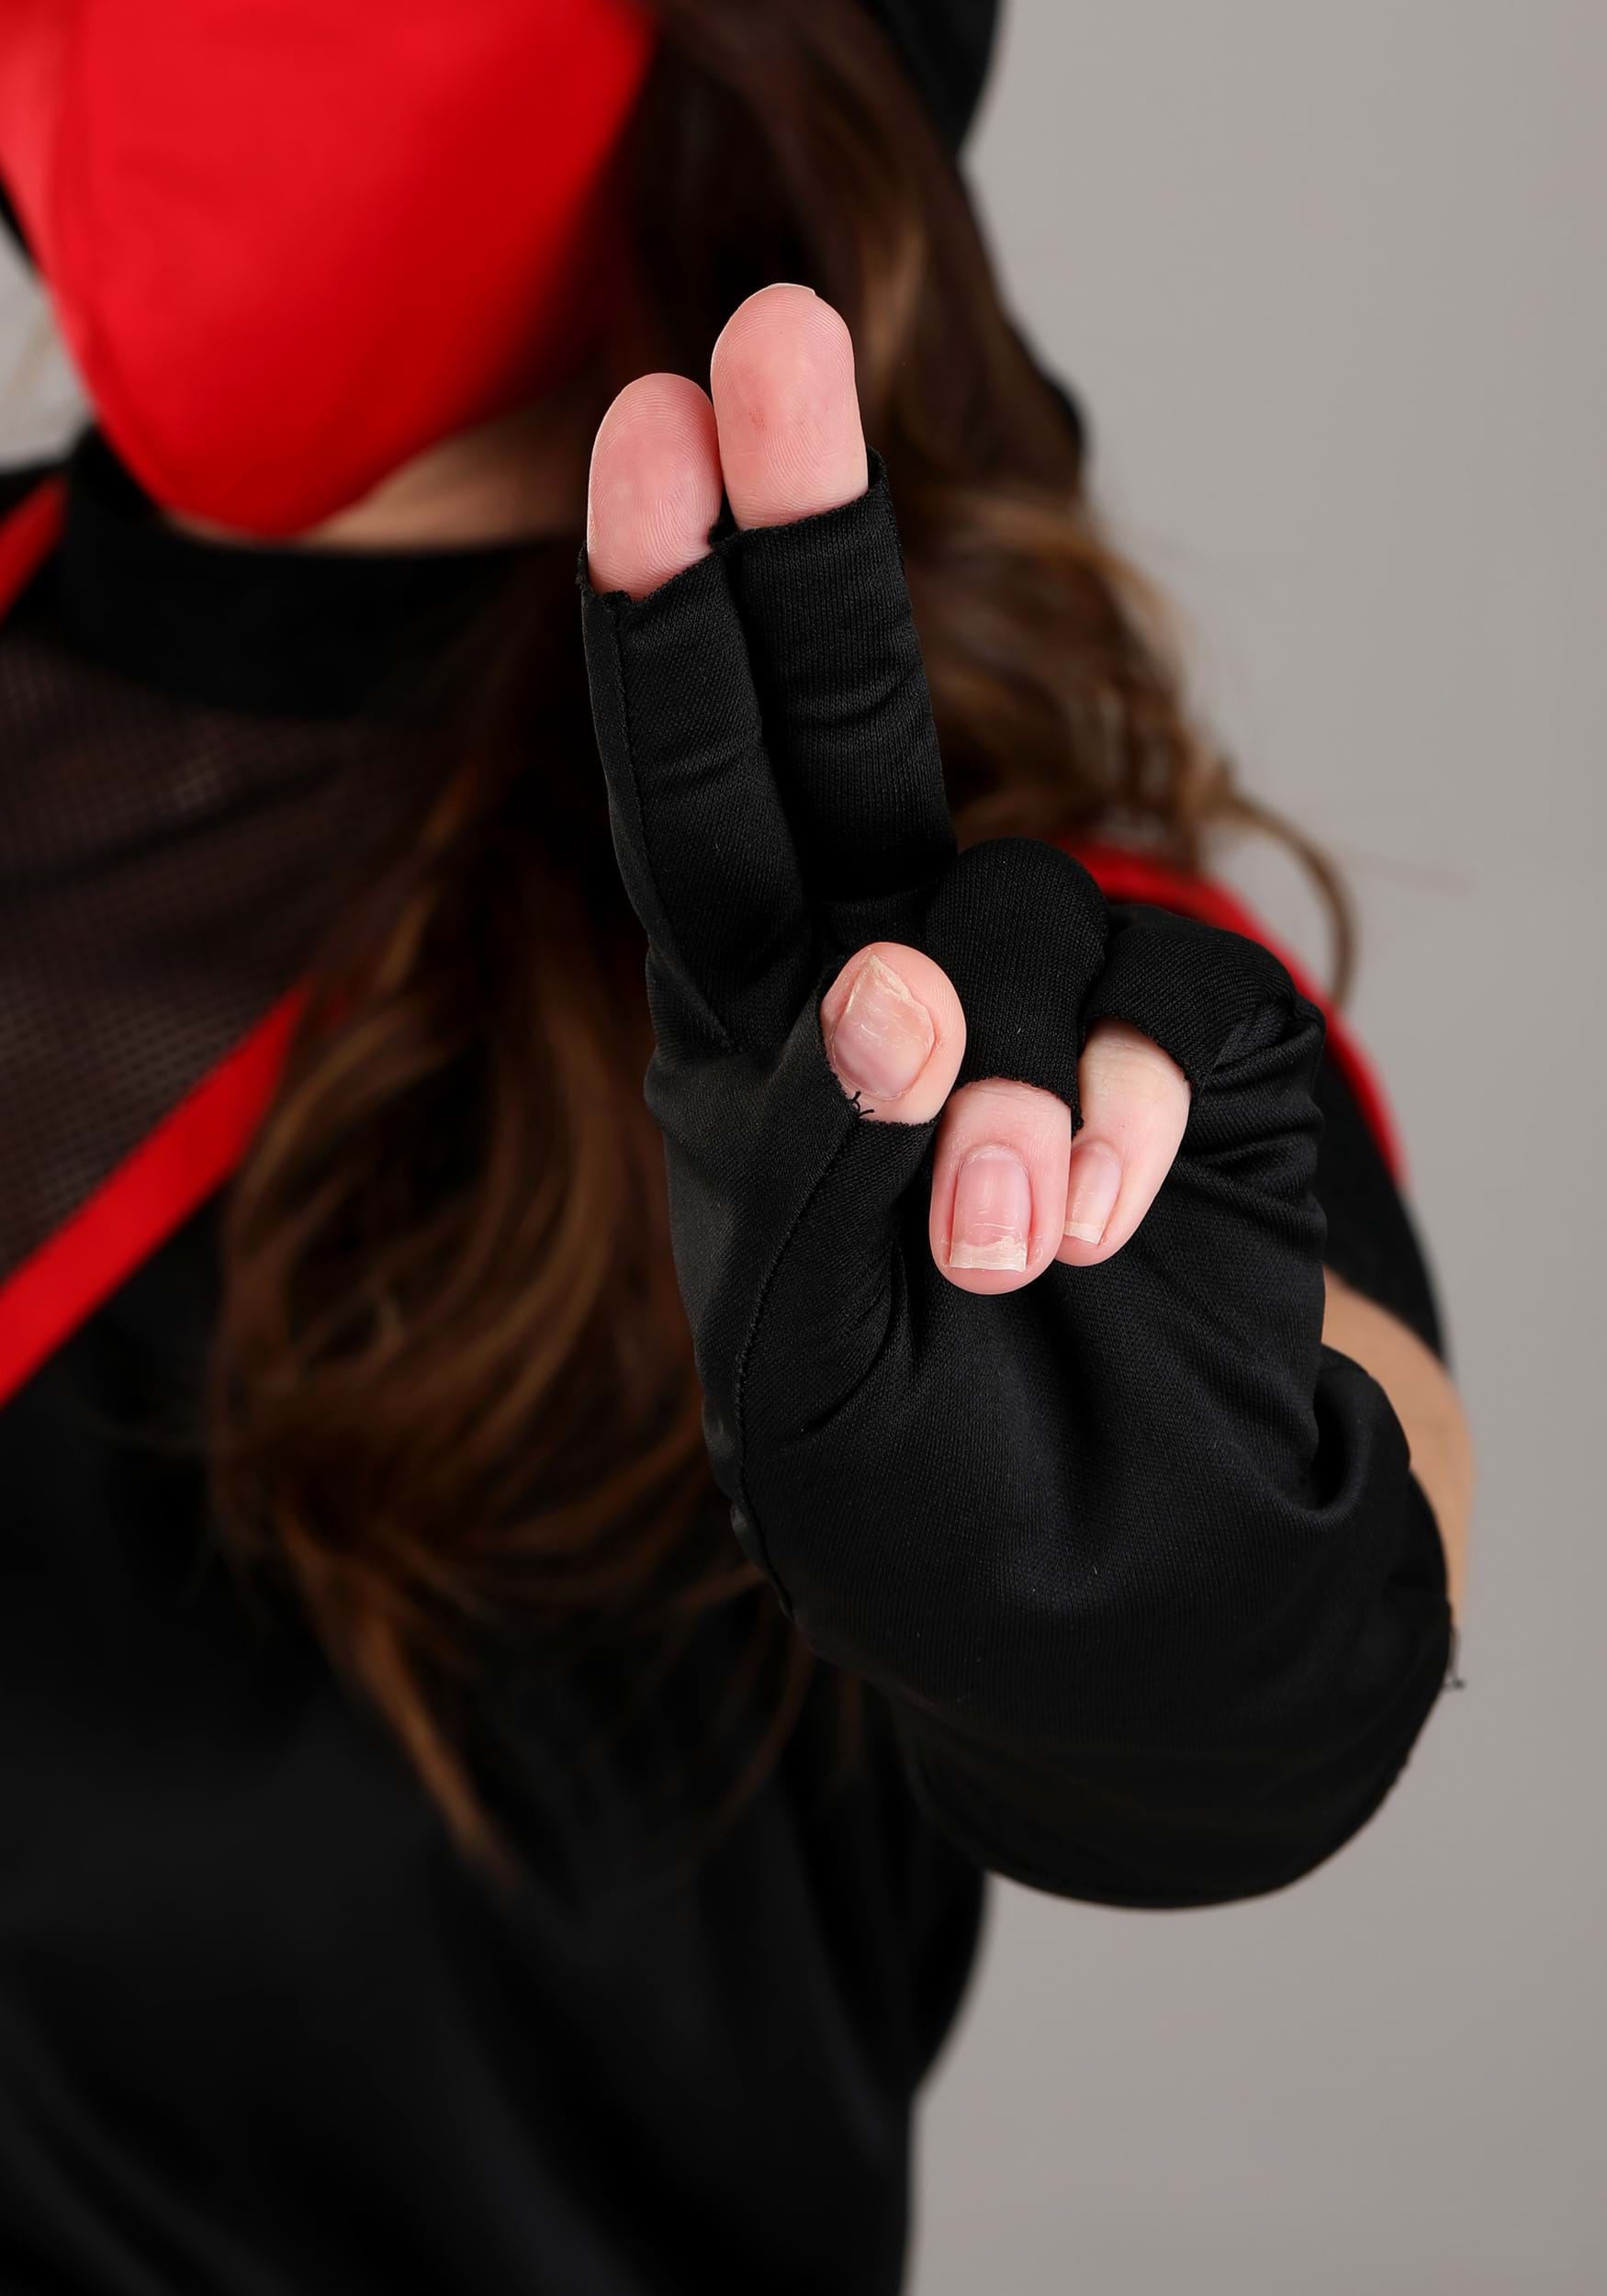 https://images.halloweencostumes.com/products/71243/2-1-232322/stealth-ninja-costume-alt-5.jpg